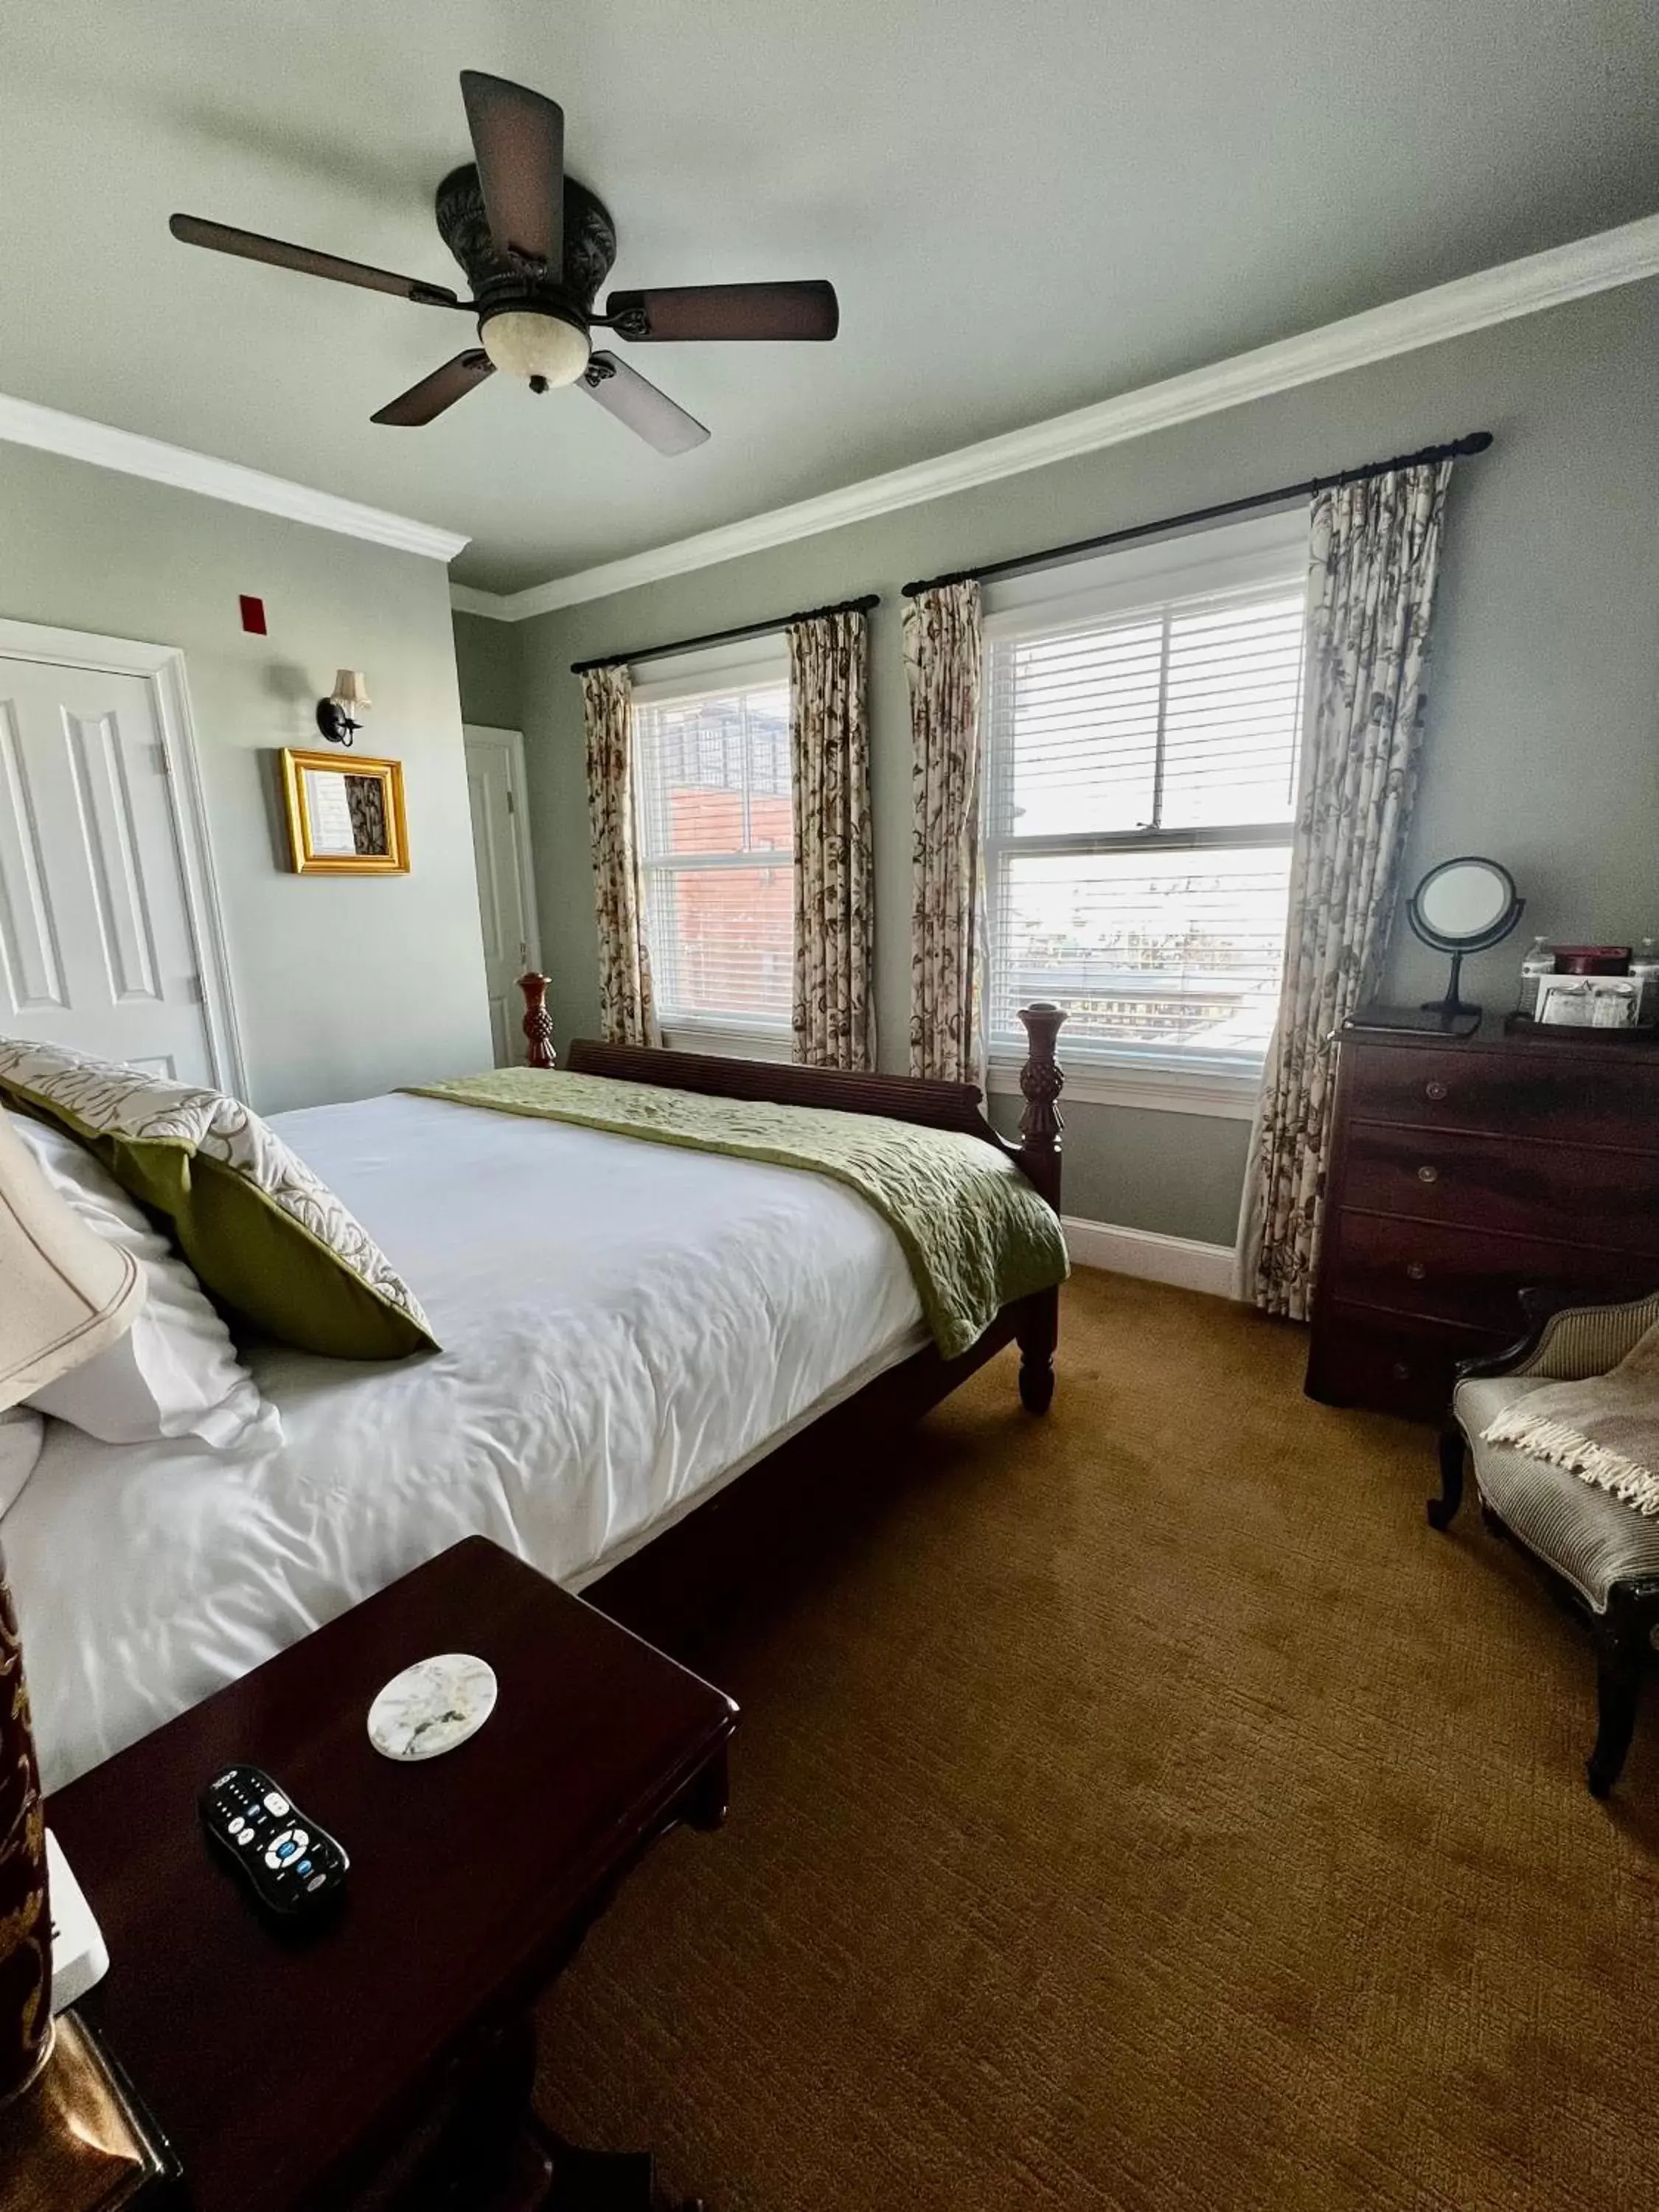 Bedroom, Bed in Almondy Inn Bed & Breakfast